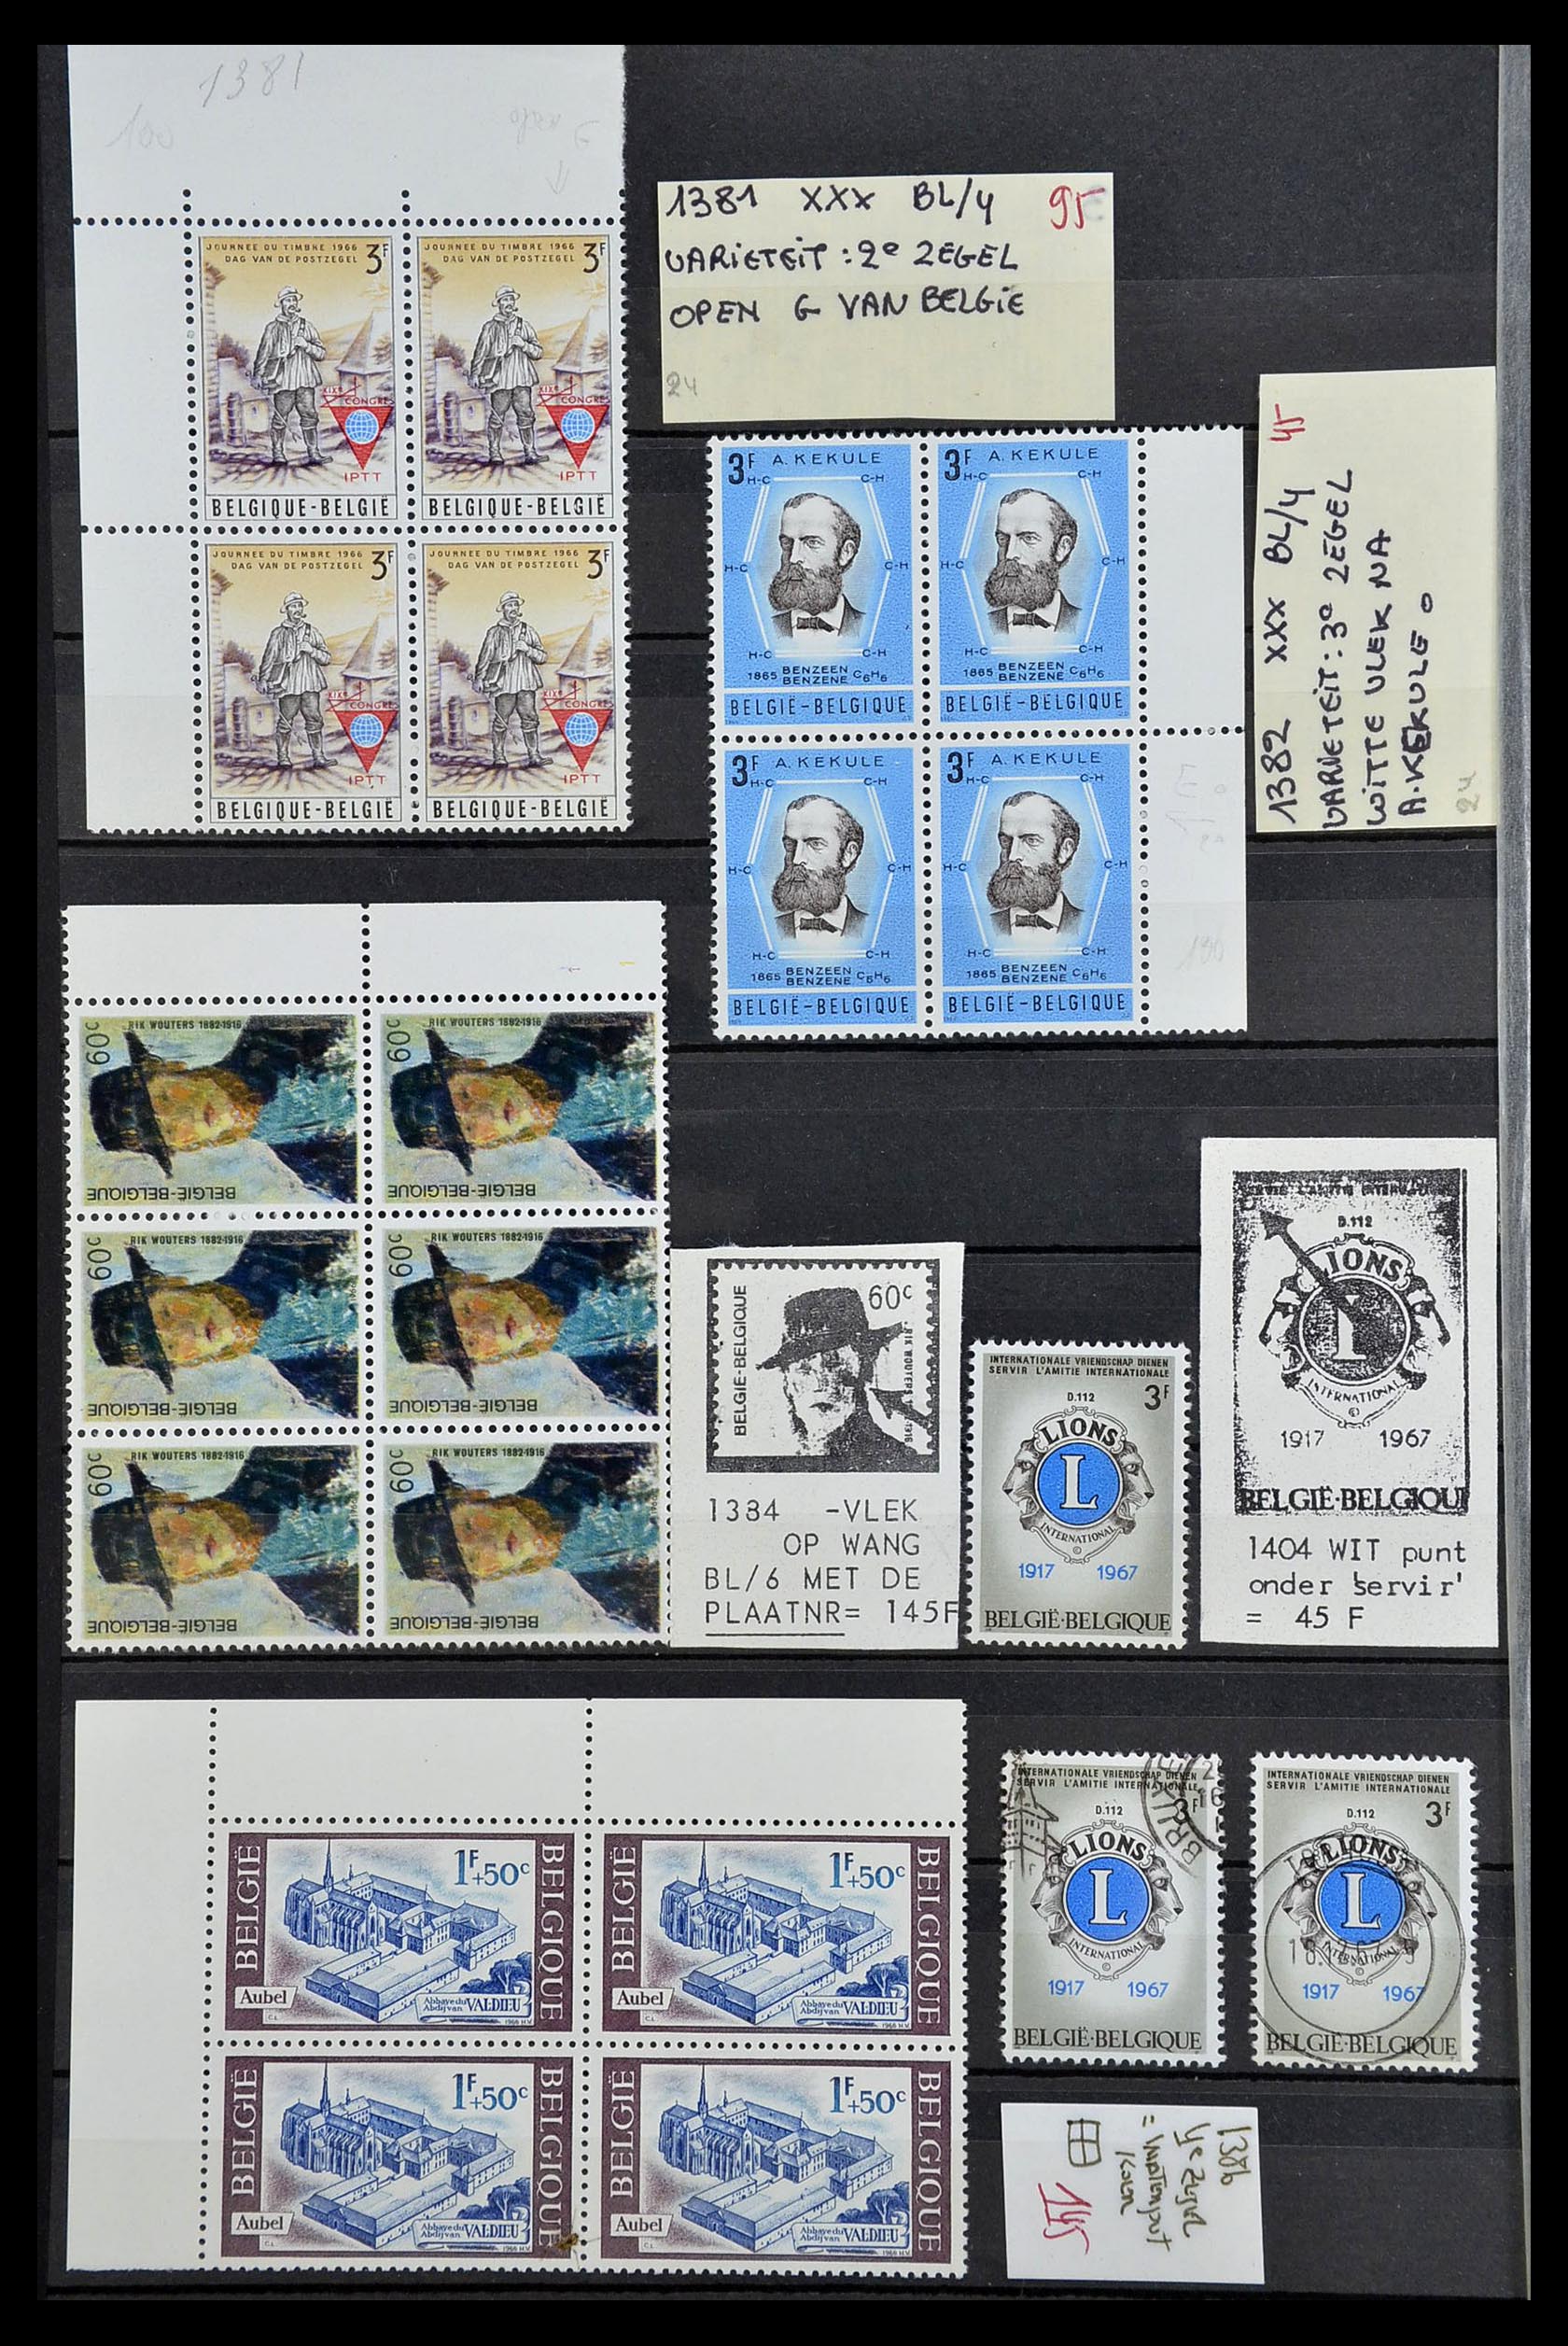 34649 024 - Stamp Collection 34649 Belgium varieties 1940-1971.